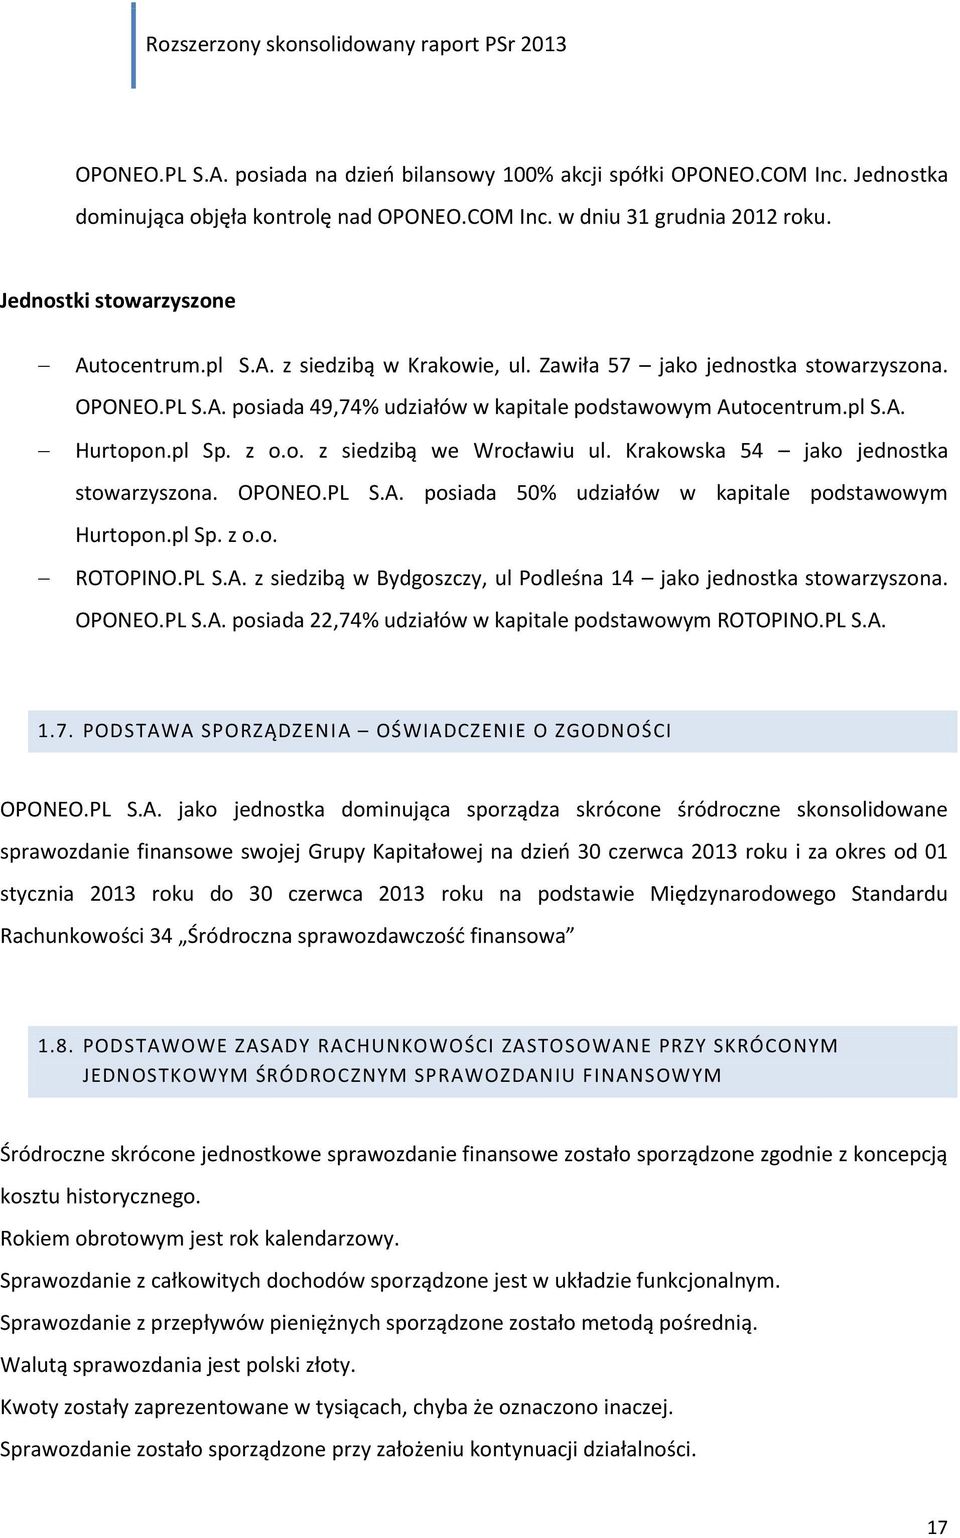 Krakowska 54 jako jednostka stowarzyszona. OPONEO.PL S.A. posiada 50% udziałów w kapitale podstawowym Hurtopon.pl Sp. z o.o. ROTOPINO.PL S.A. z siedzibą w Bydgoszczy, ul Podleśna 14 jako jednostka stowarzyszona.